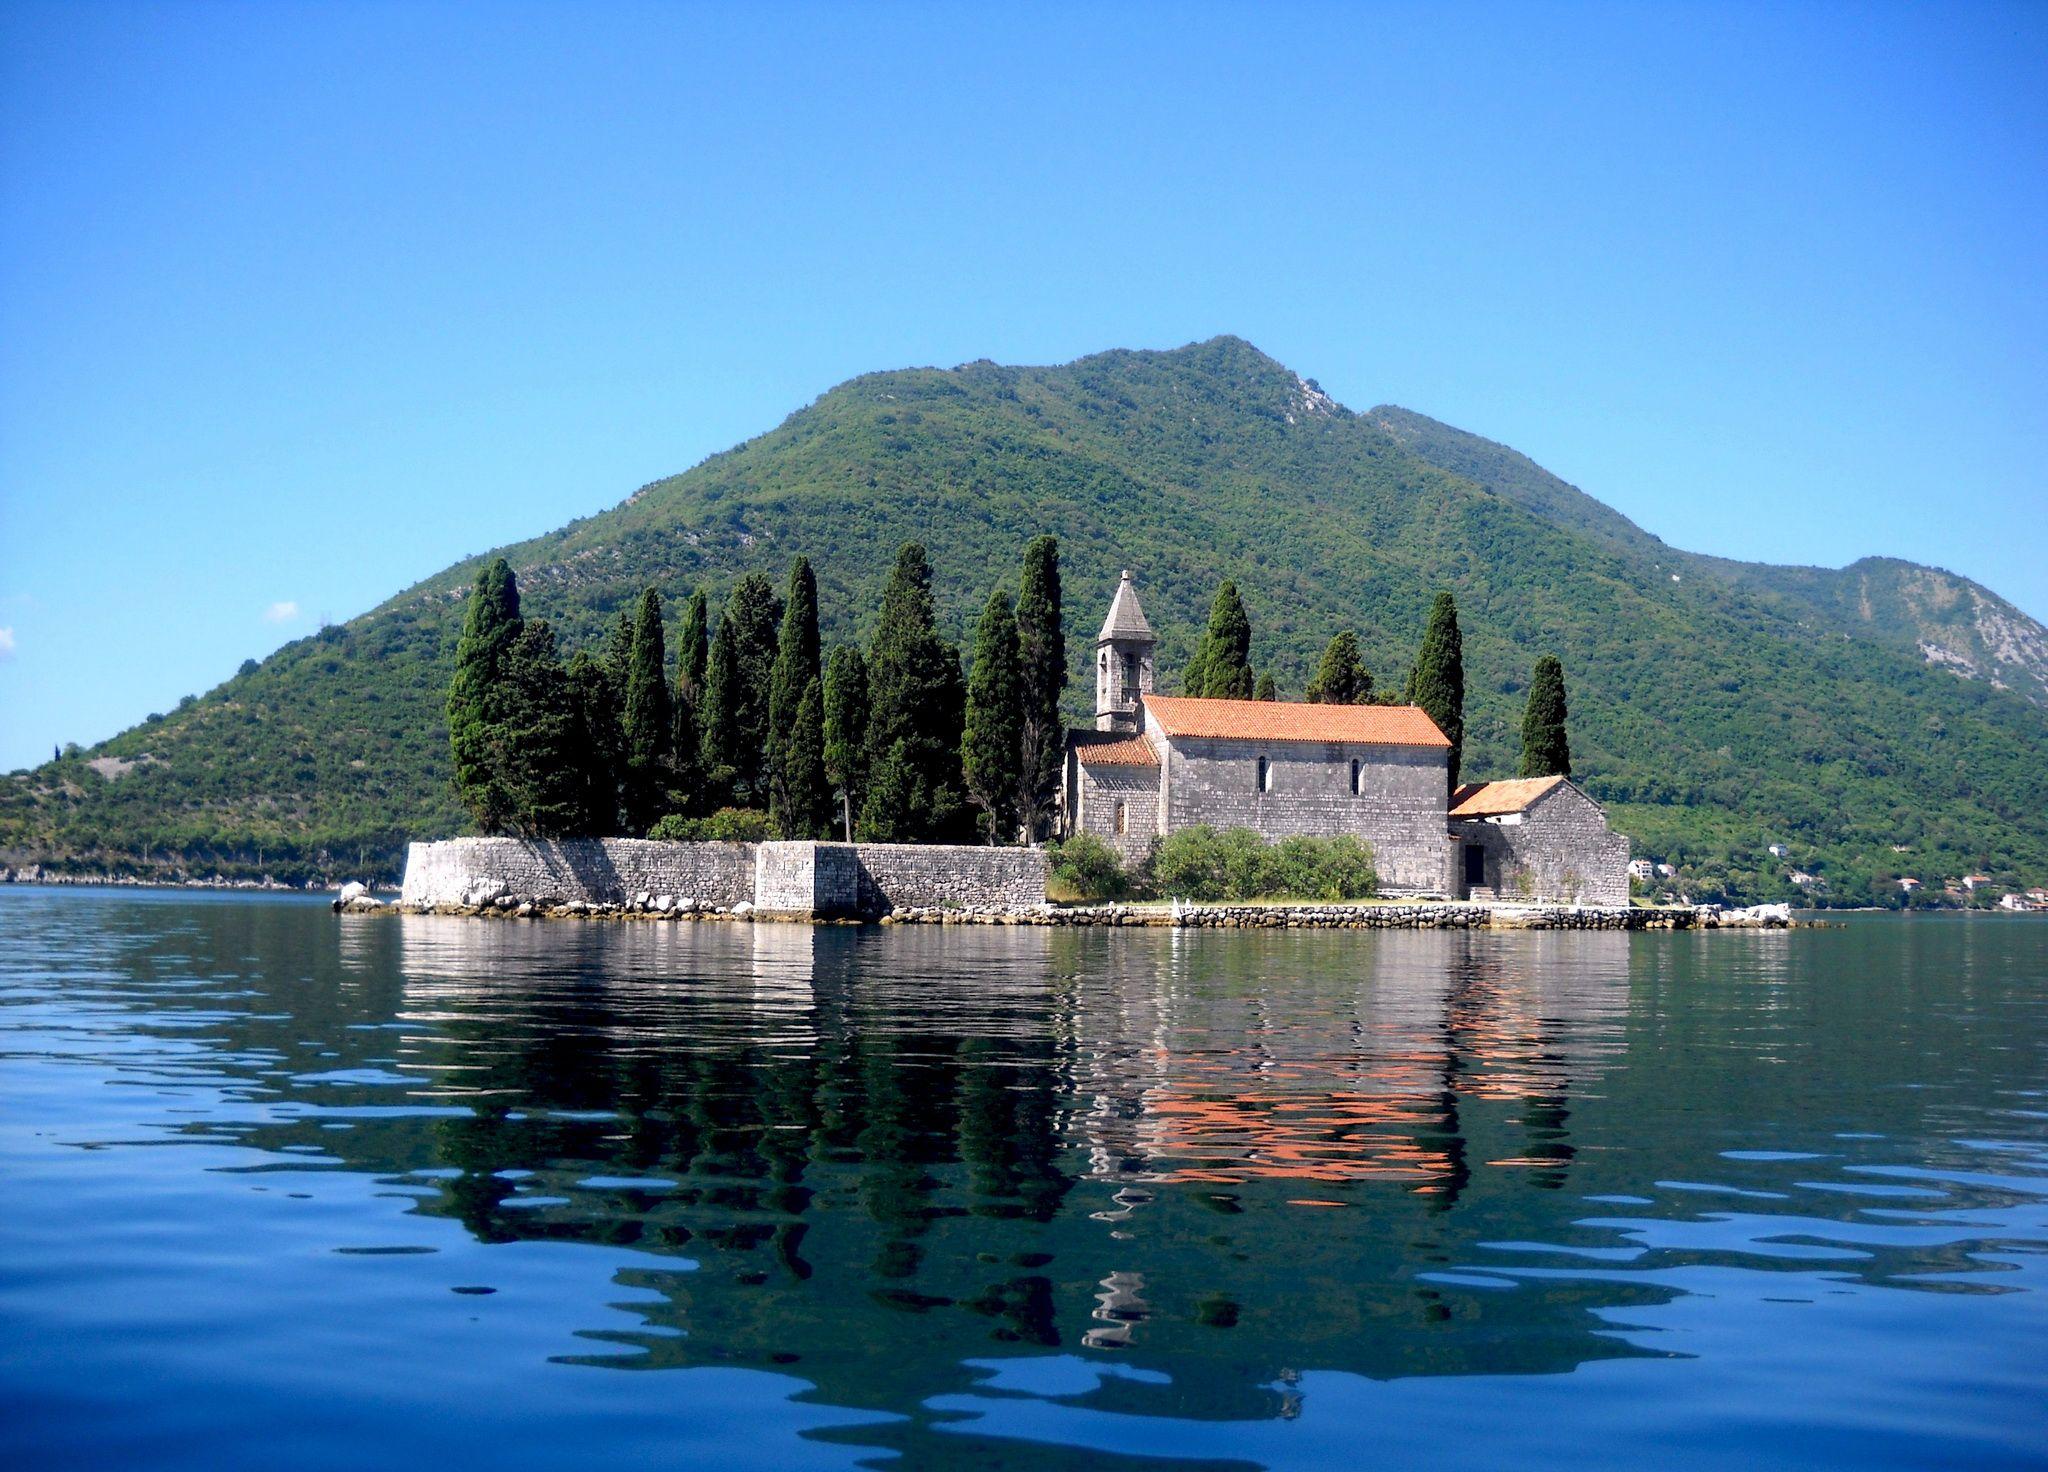 Kotor Bay Montenegro  Free photo on Pixabay  Pixabay